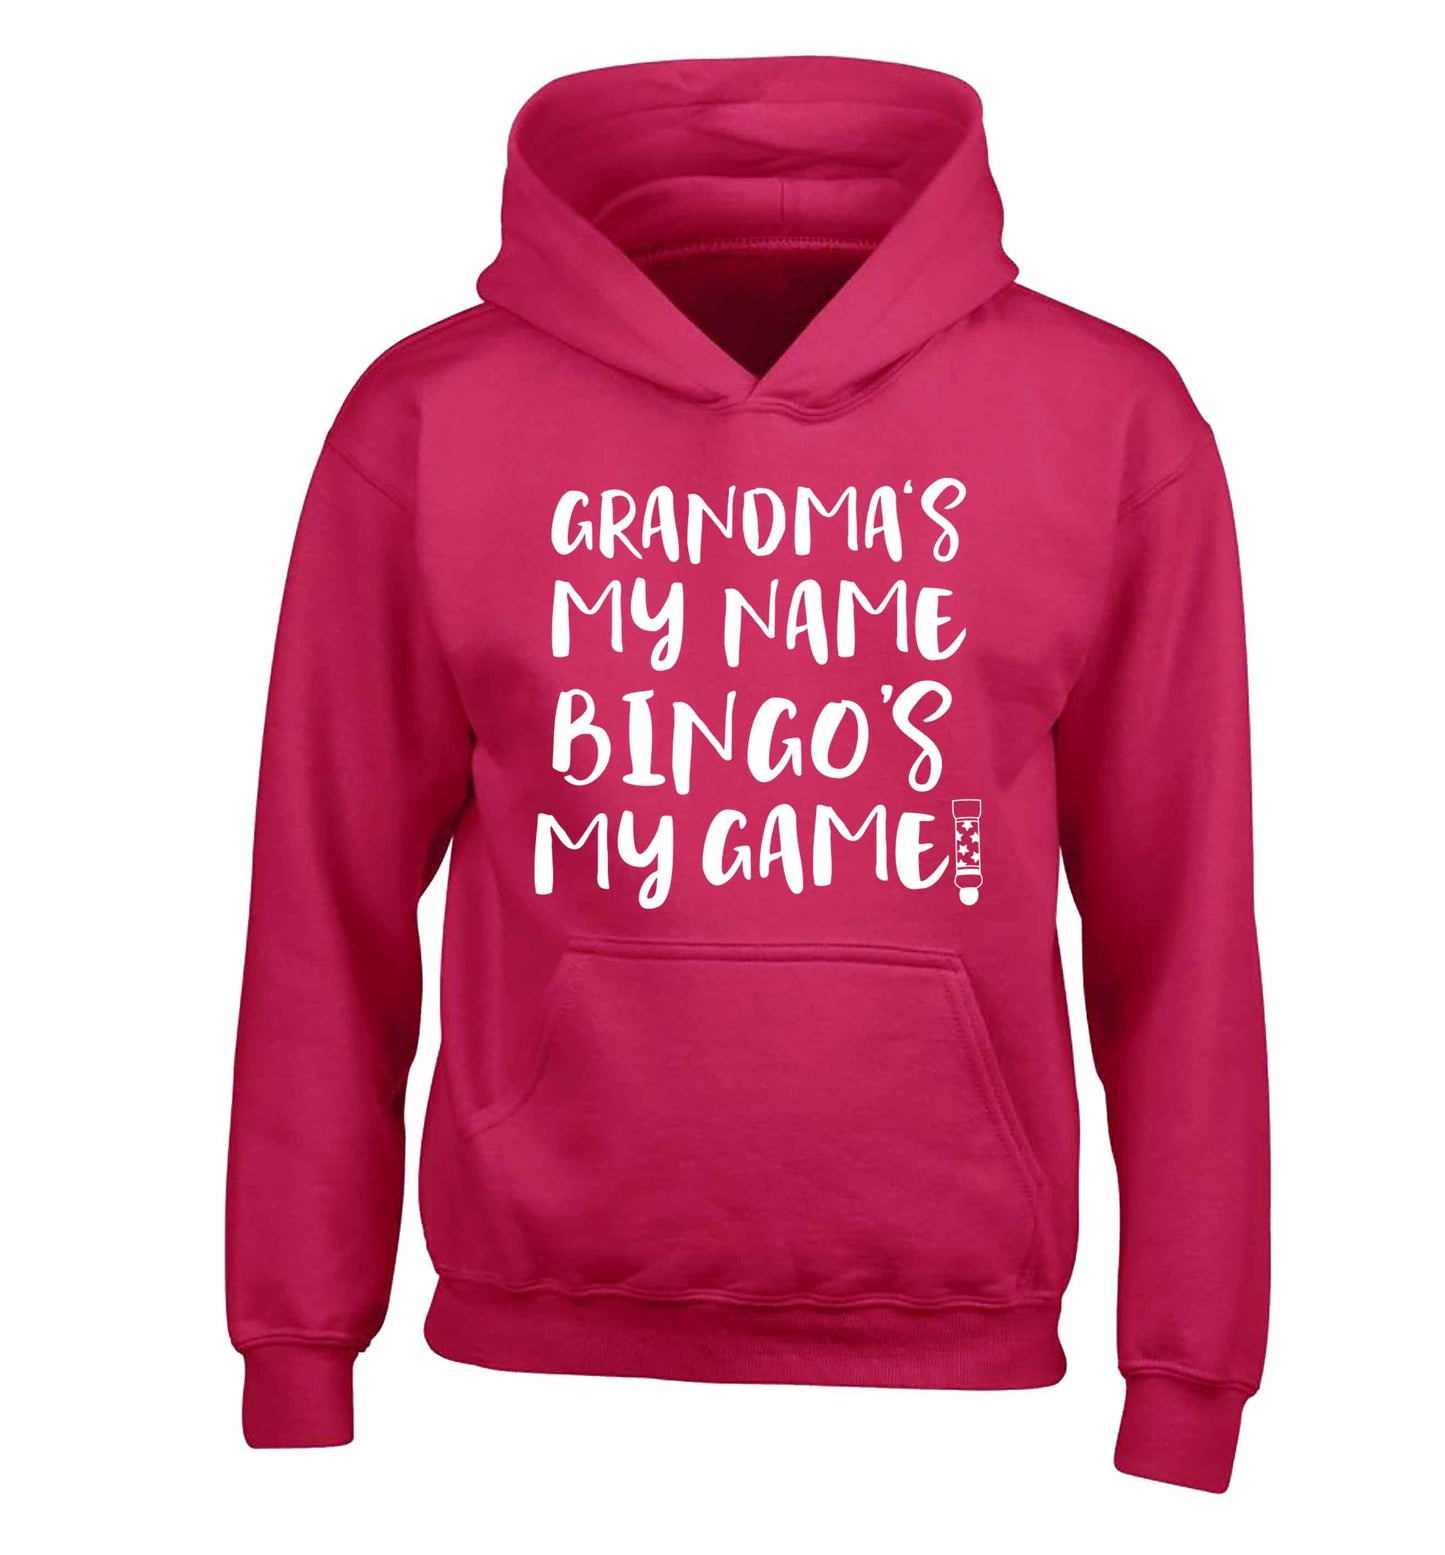 Grandma's my name bingo's my game! children's pink hoodie 12-13 Years